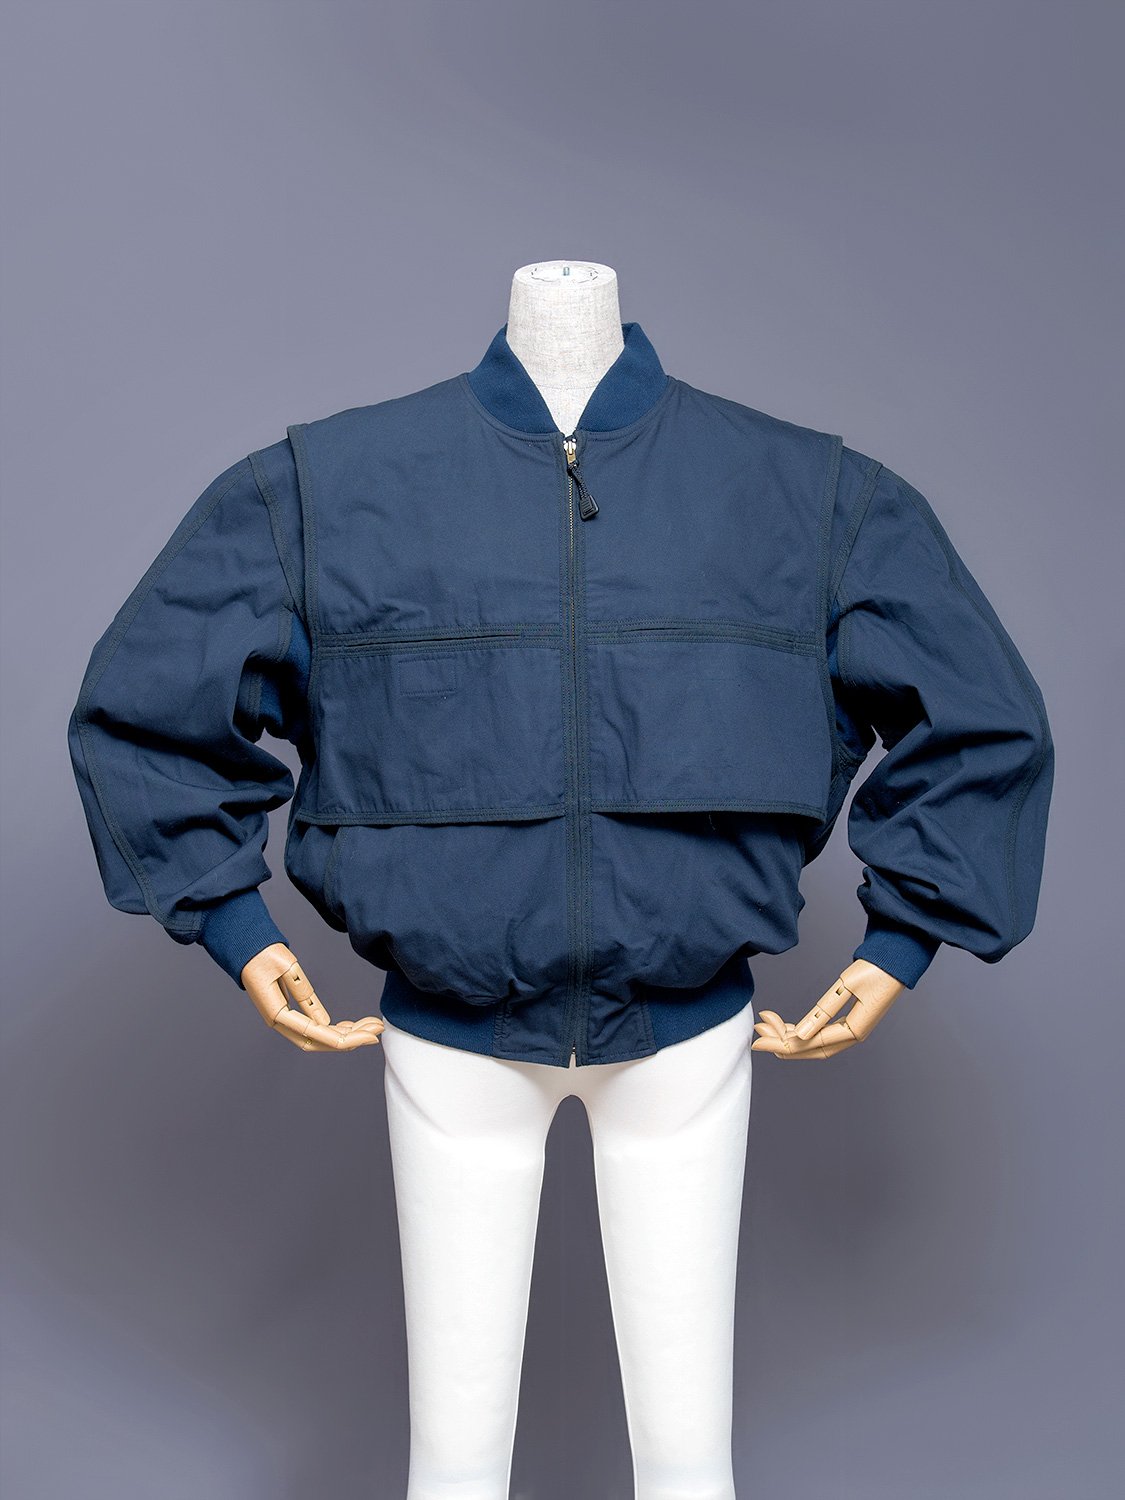 Issey Miyake Layered Bomber Jacket, 1980s | Japanese Fashion Archive